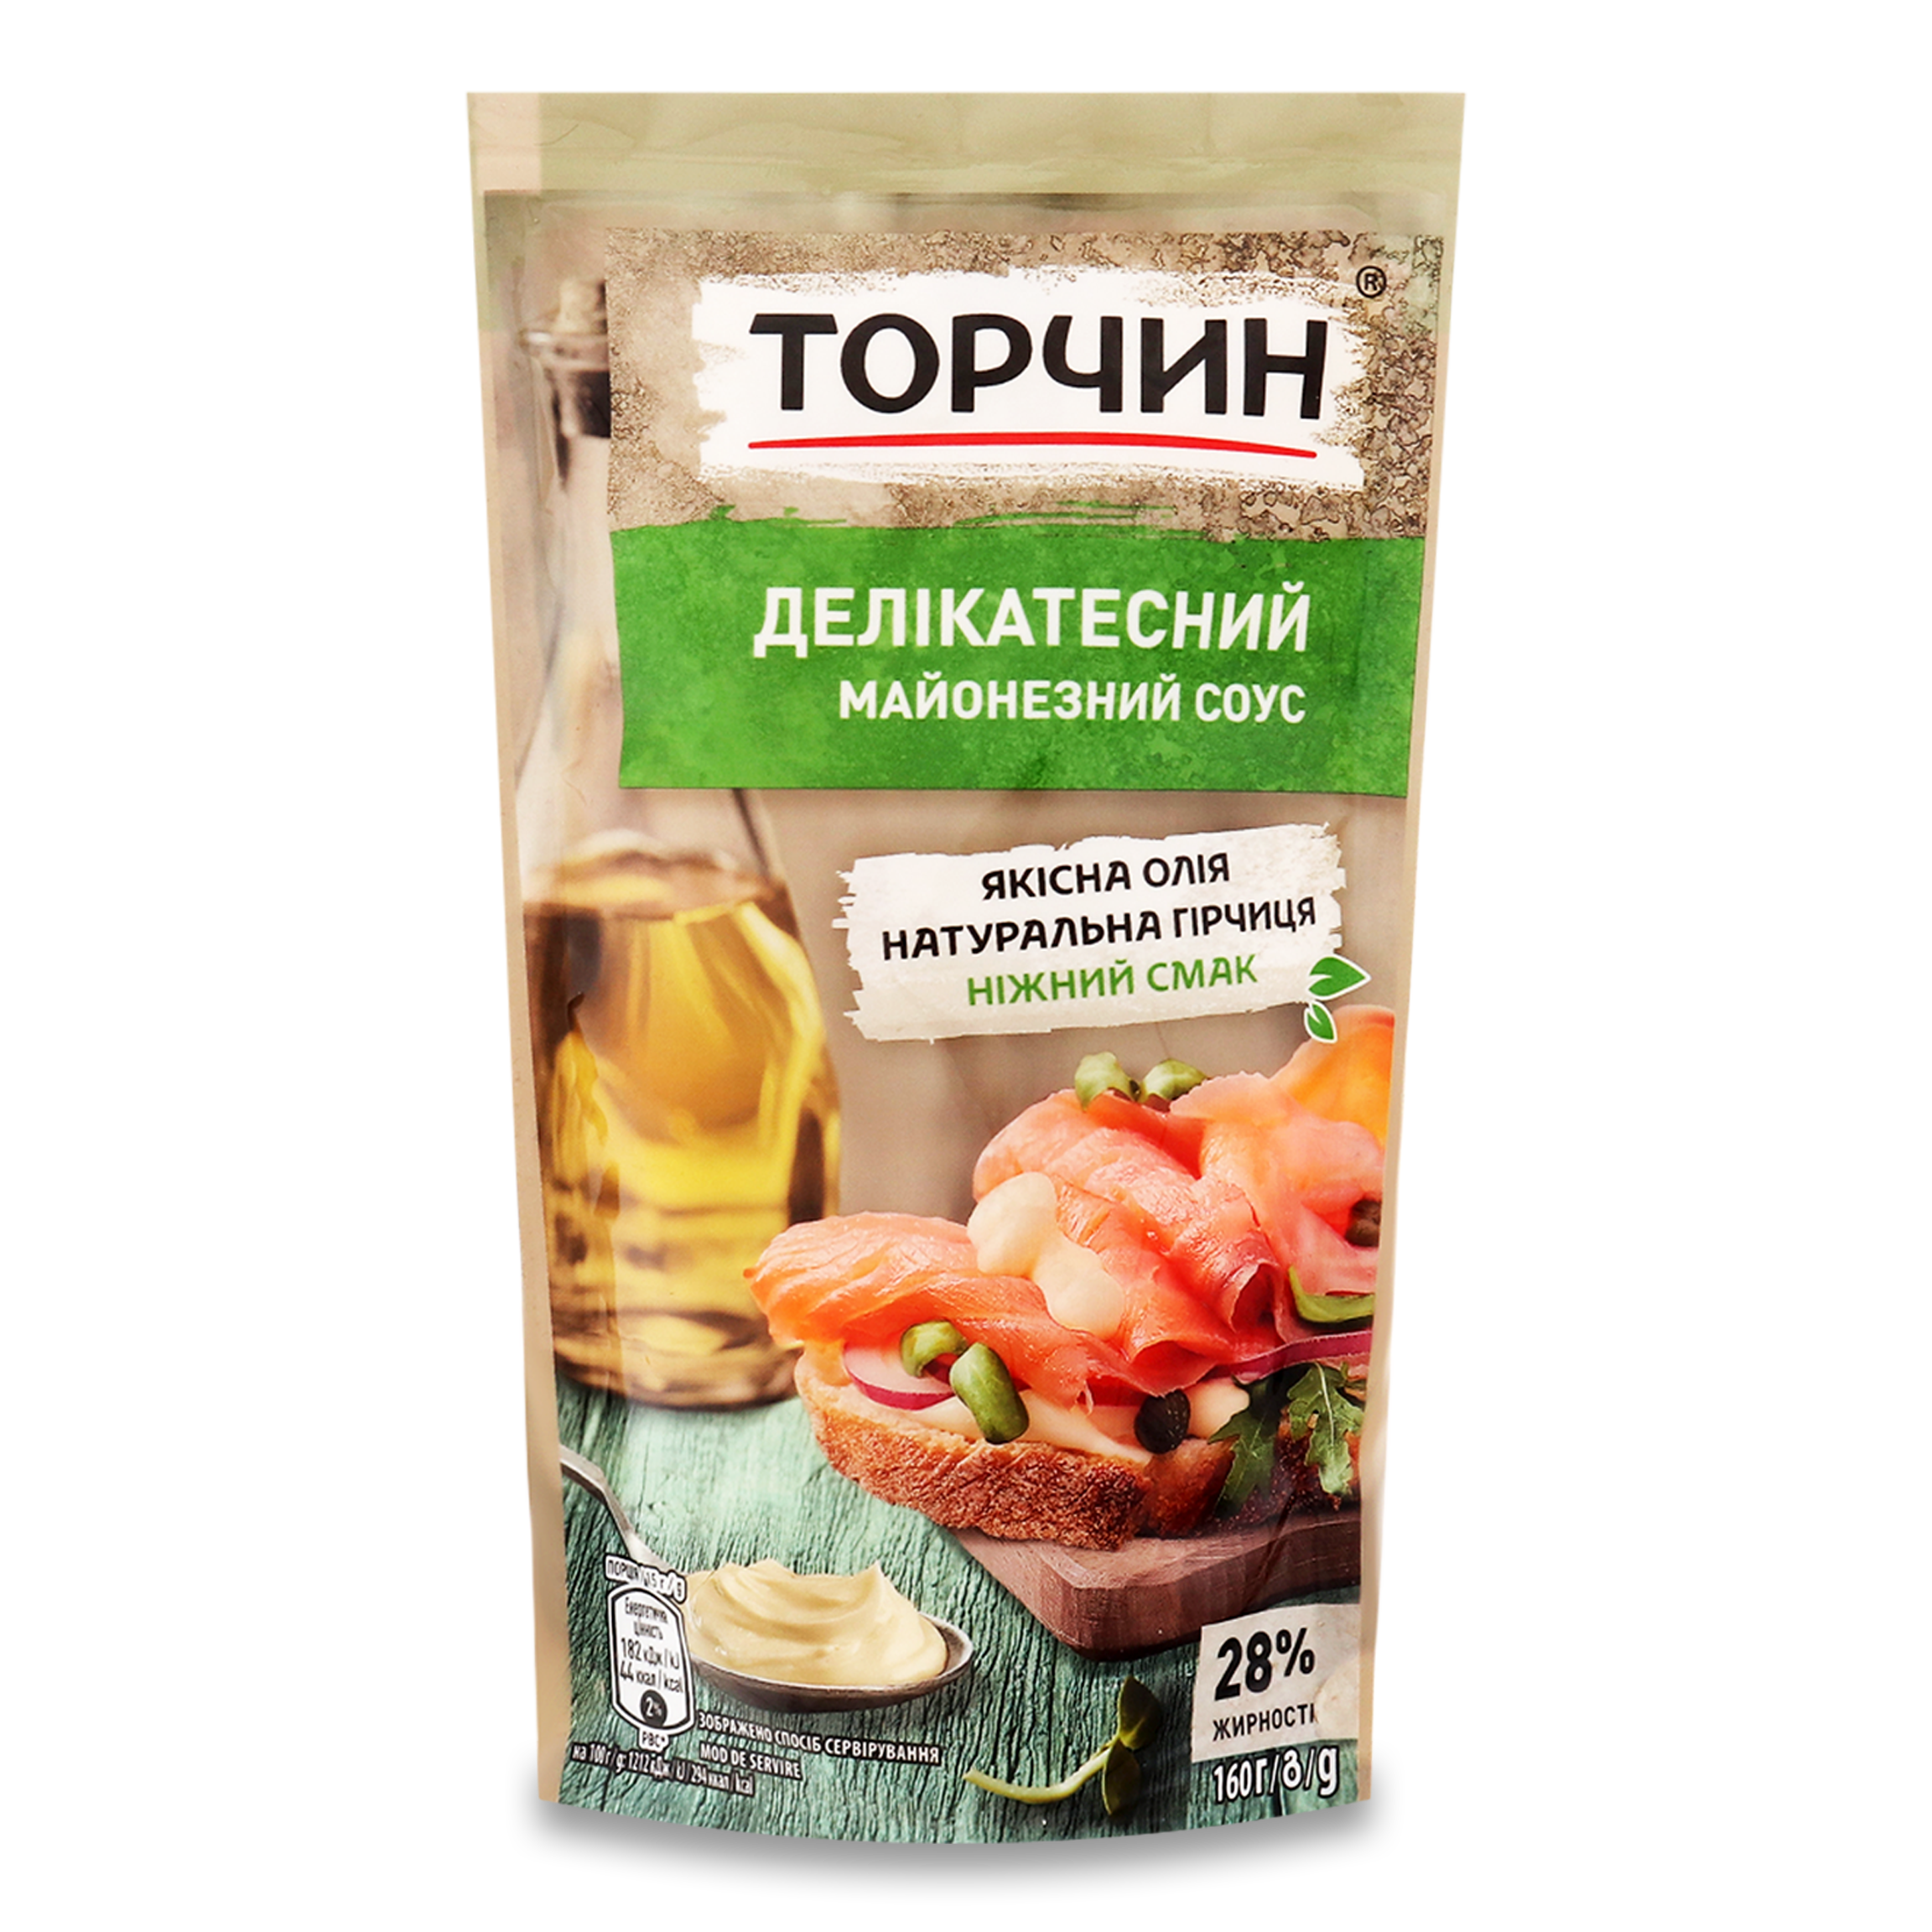 Torchyn Delikatesniy mayonnaise sauce 28% 160g